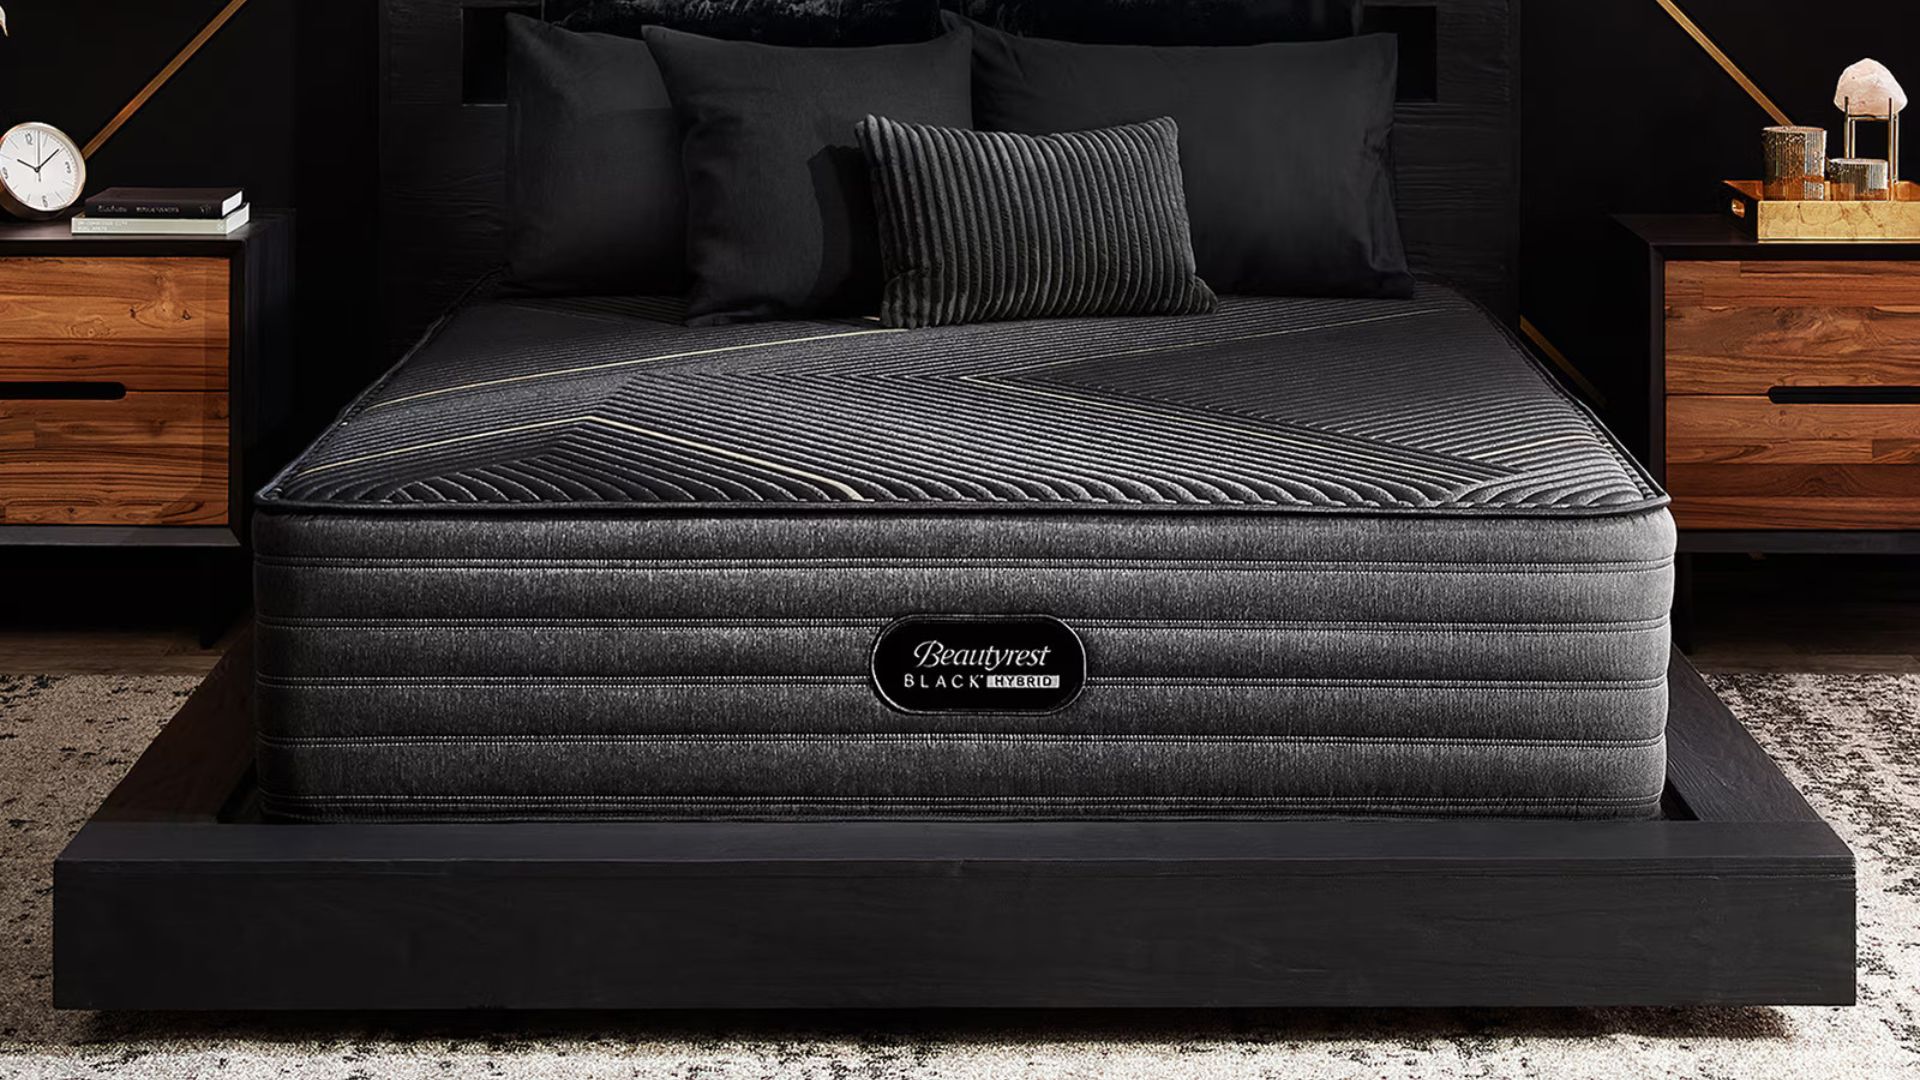 Beautyrest Black mattress